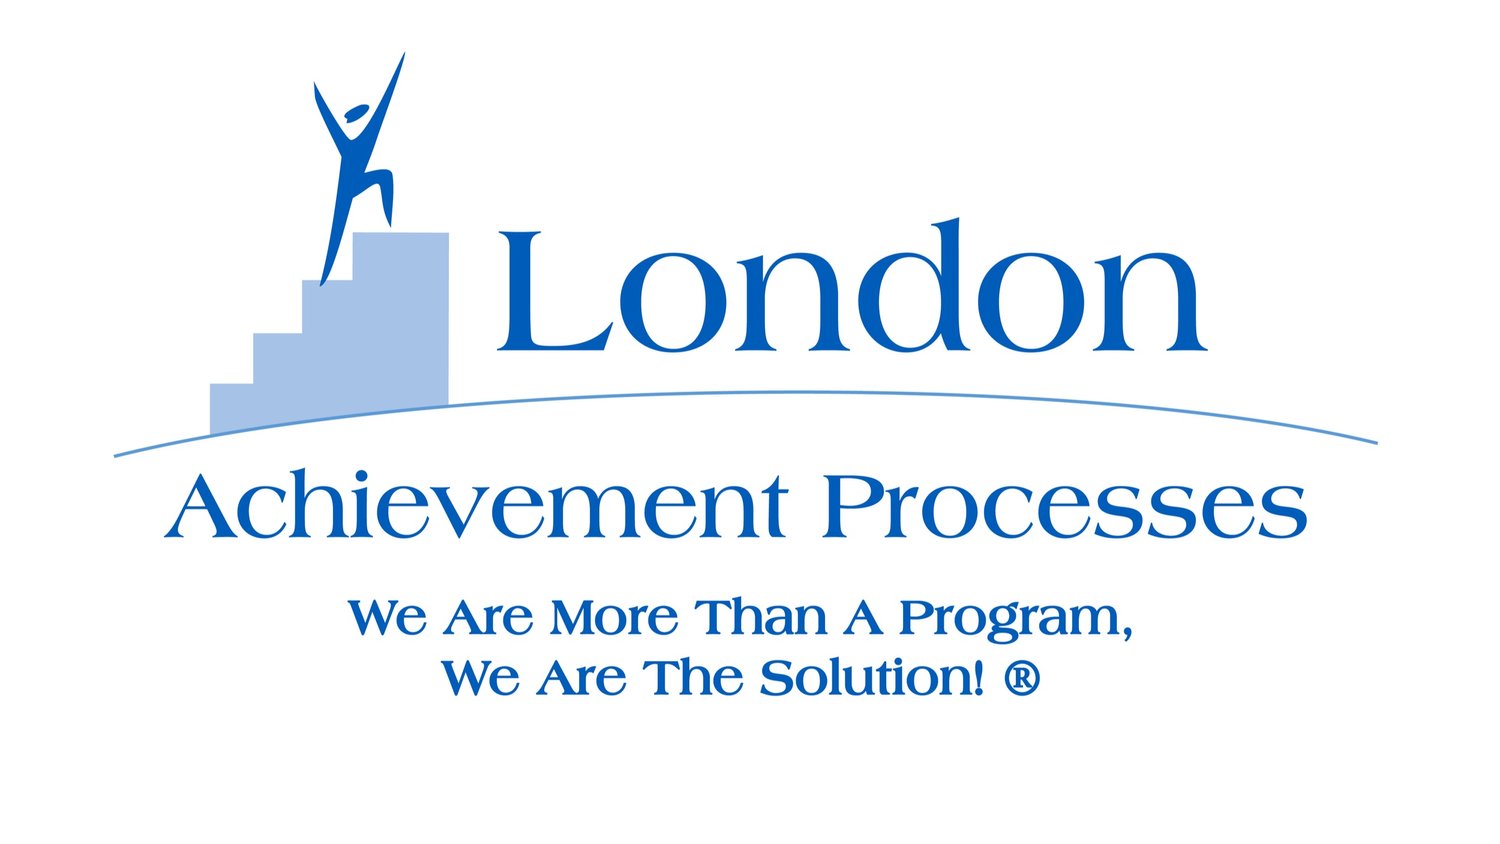 London Achievement Processes